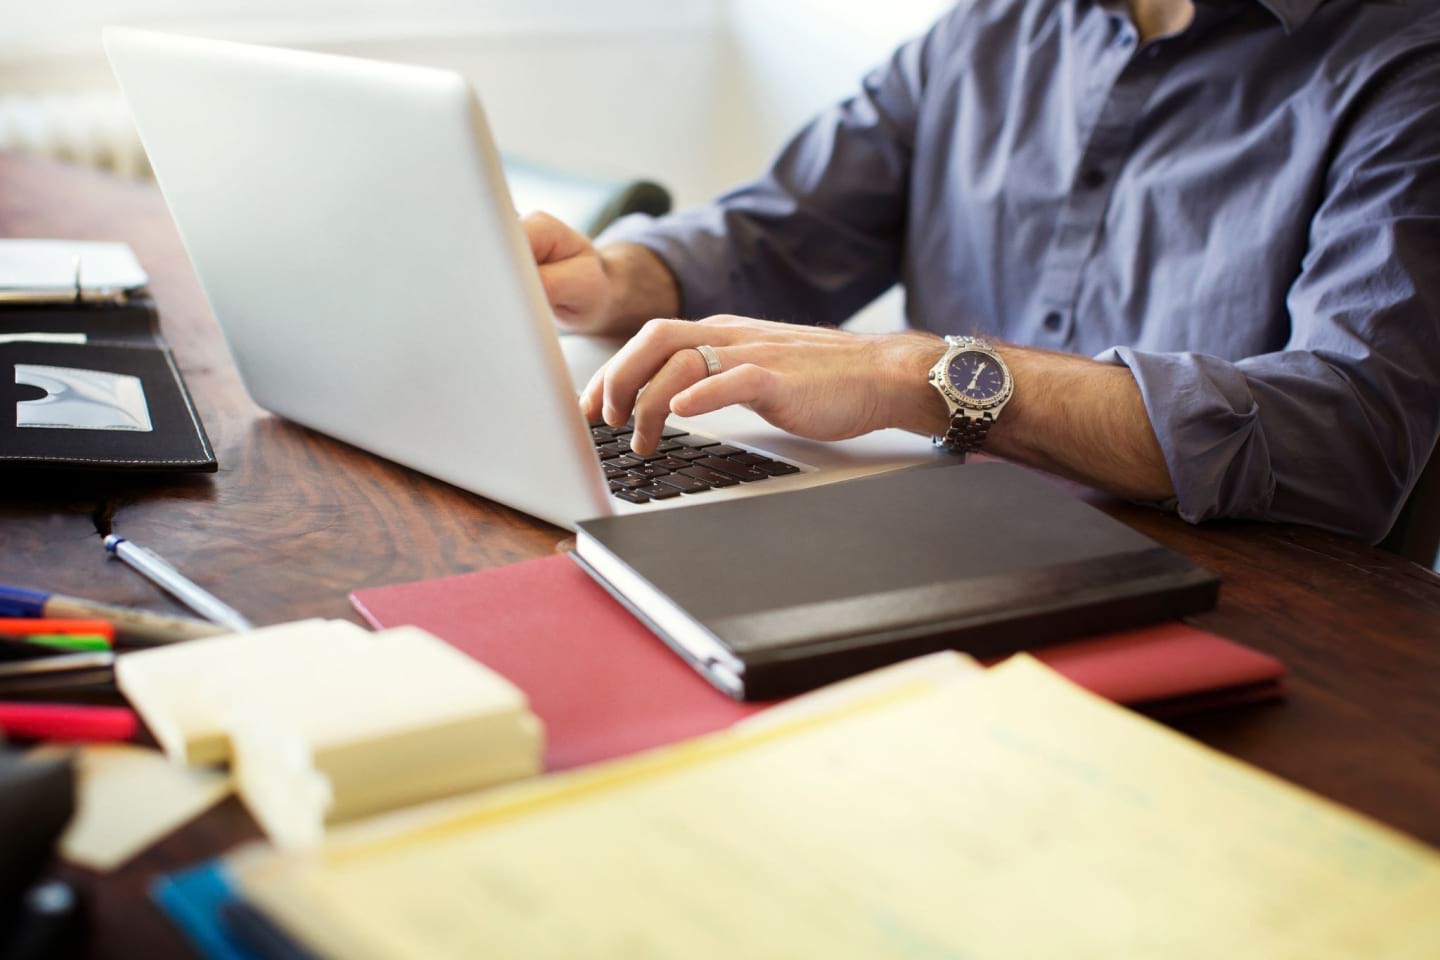 Una persona trabaja con un ordenador portátil en un escritorio con bolígrafos, post-its y cuadernos.